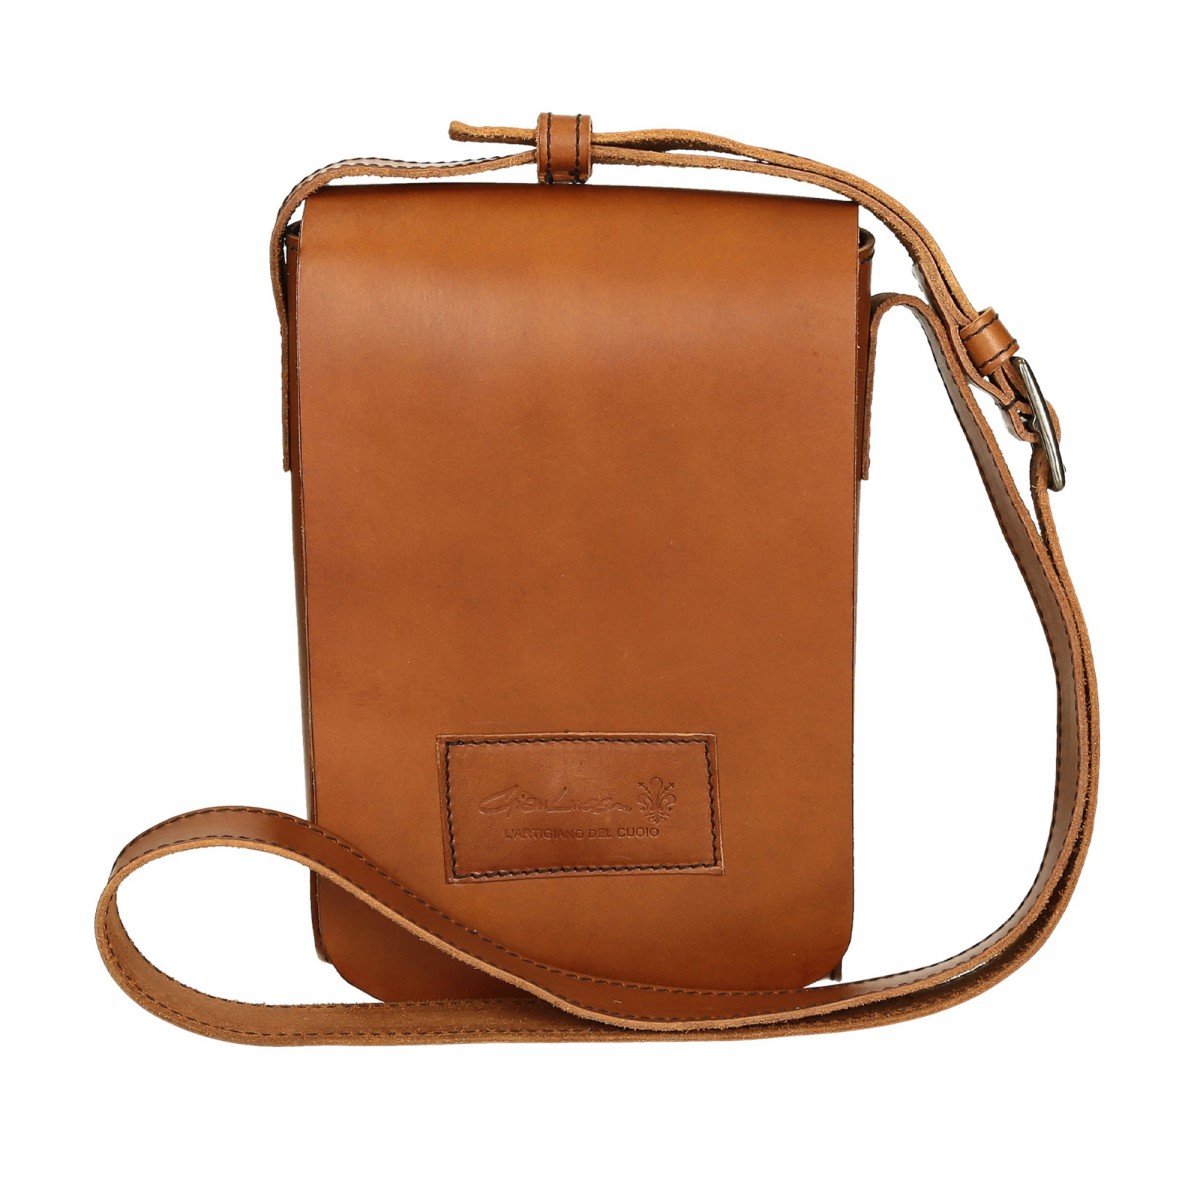 Natural leather shoulder bag long strap Handmade | Gianluca - The leather craftsman